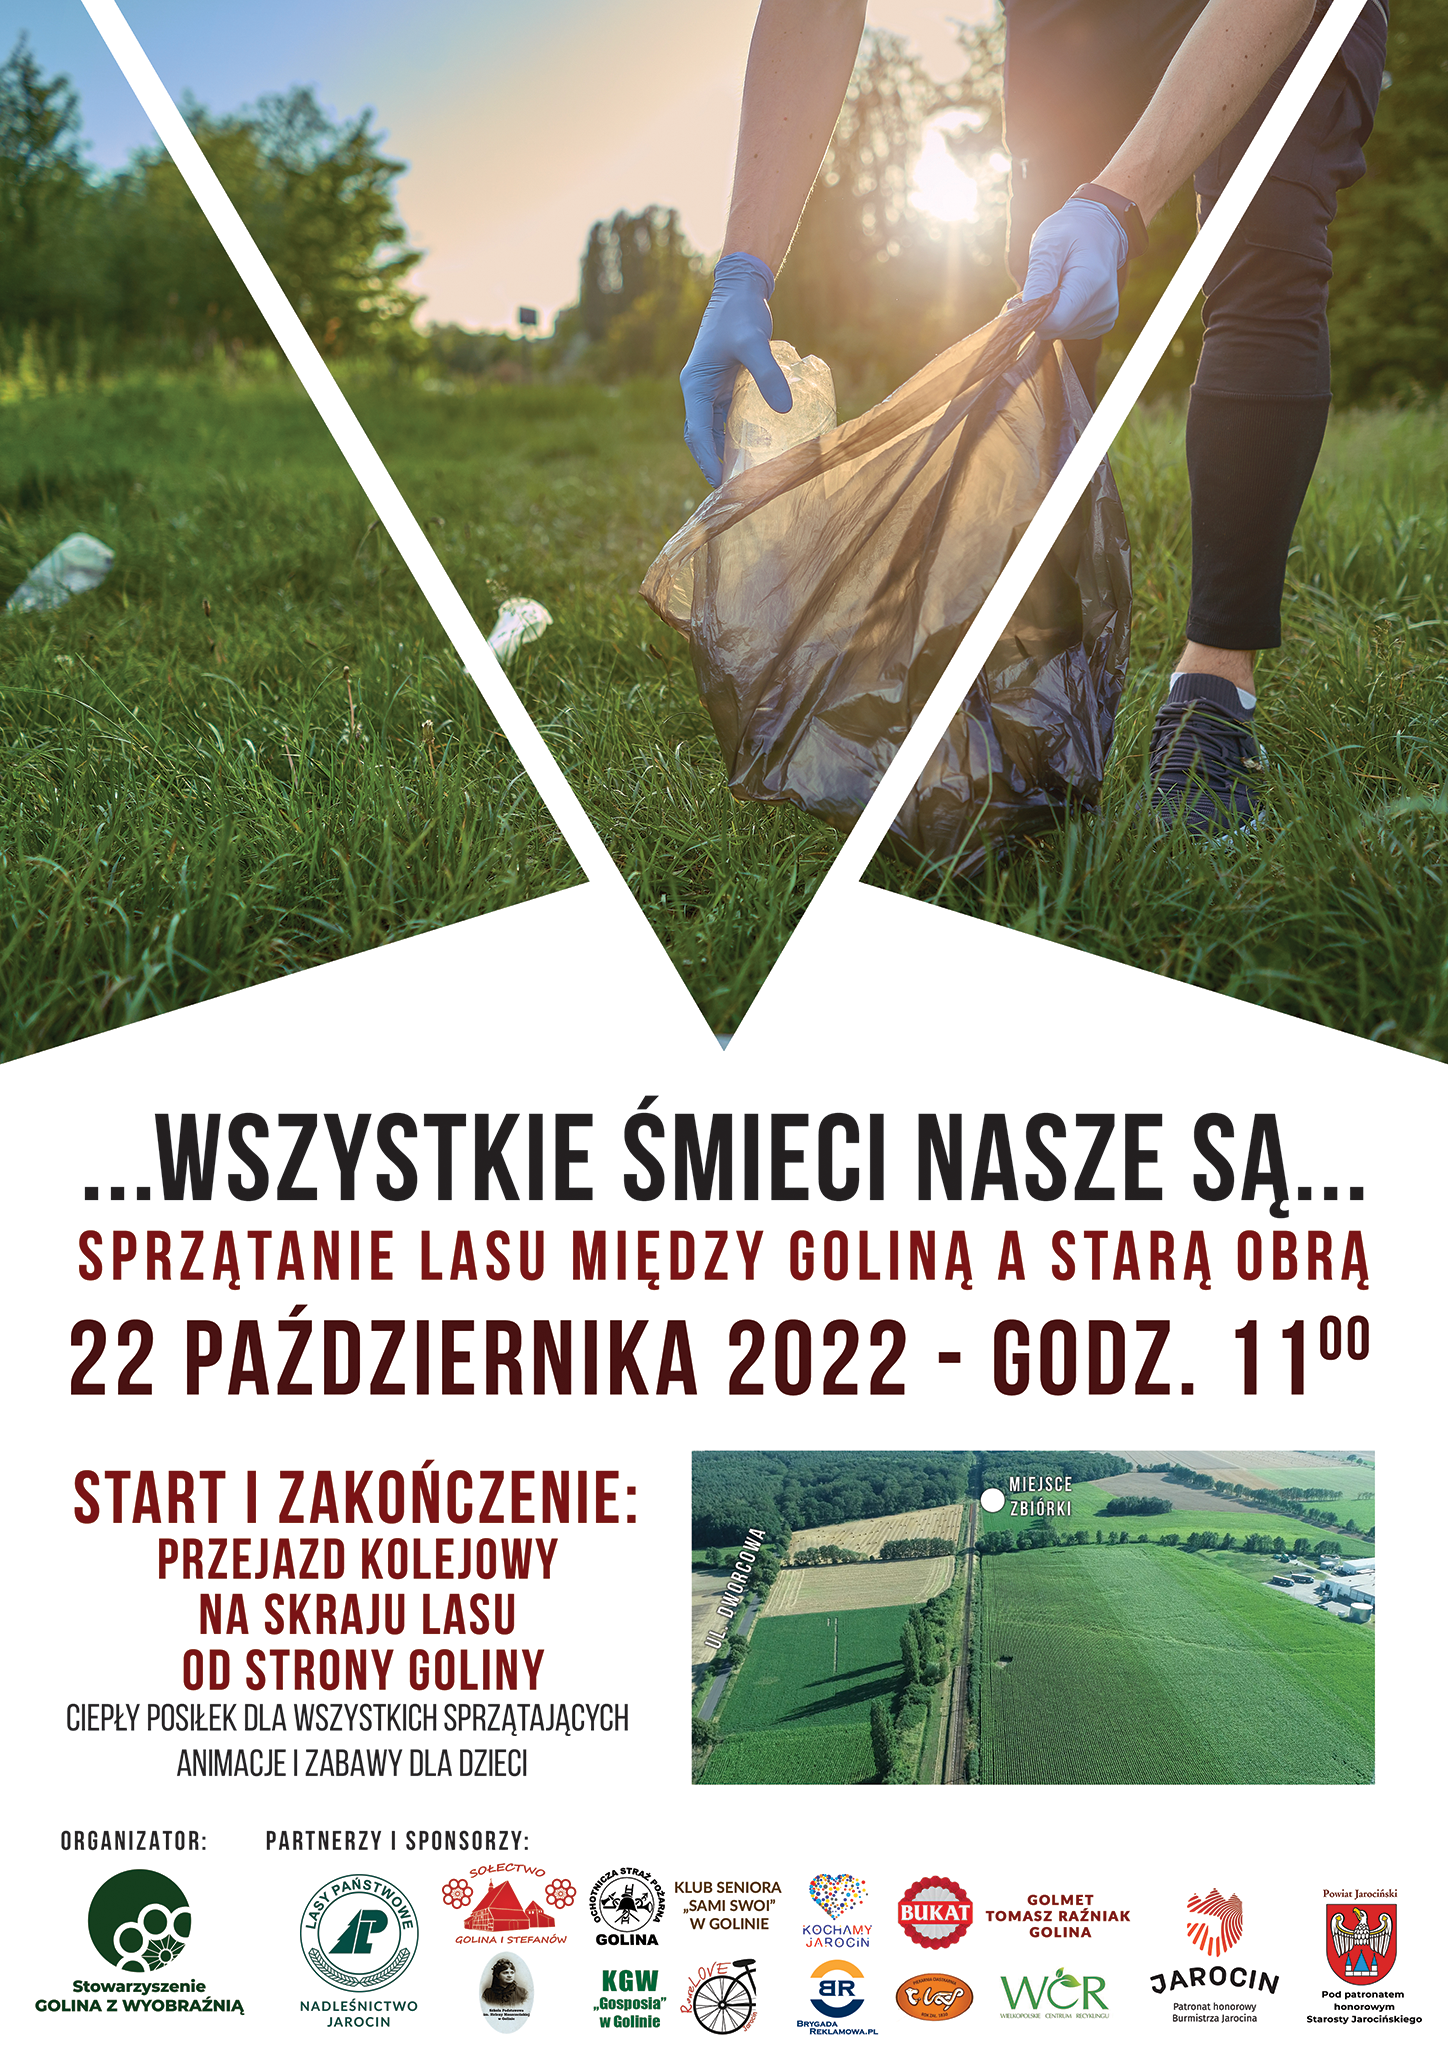 Plakat promujący akcje sprzątania lasu